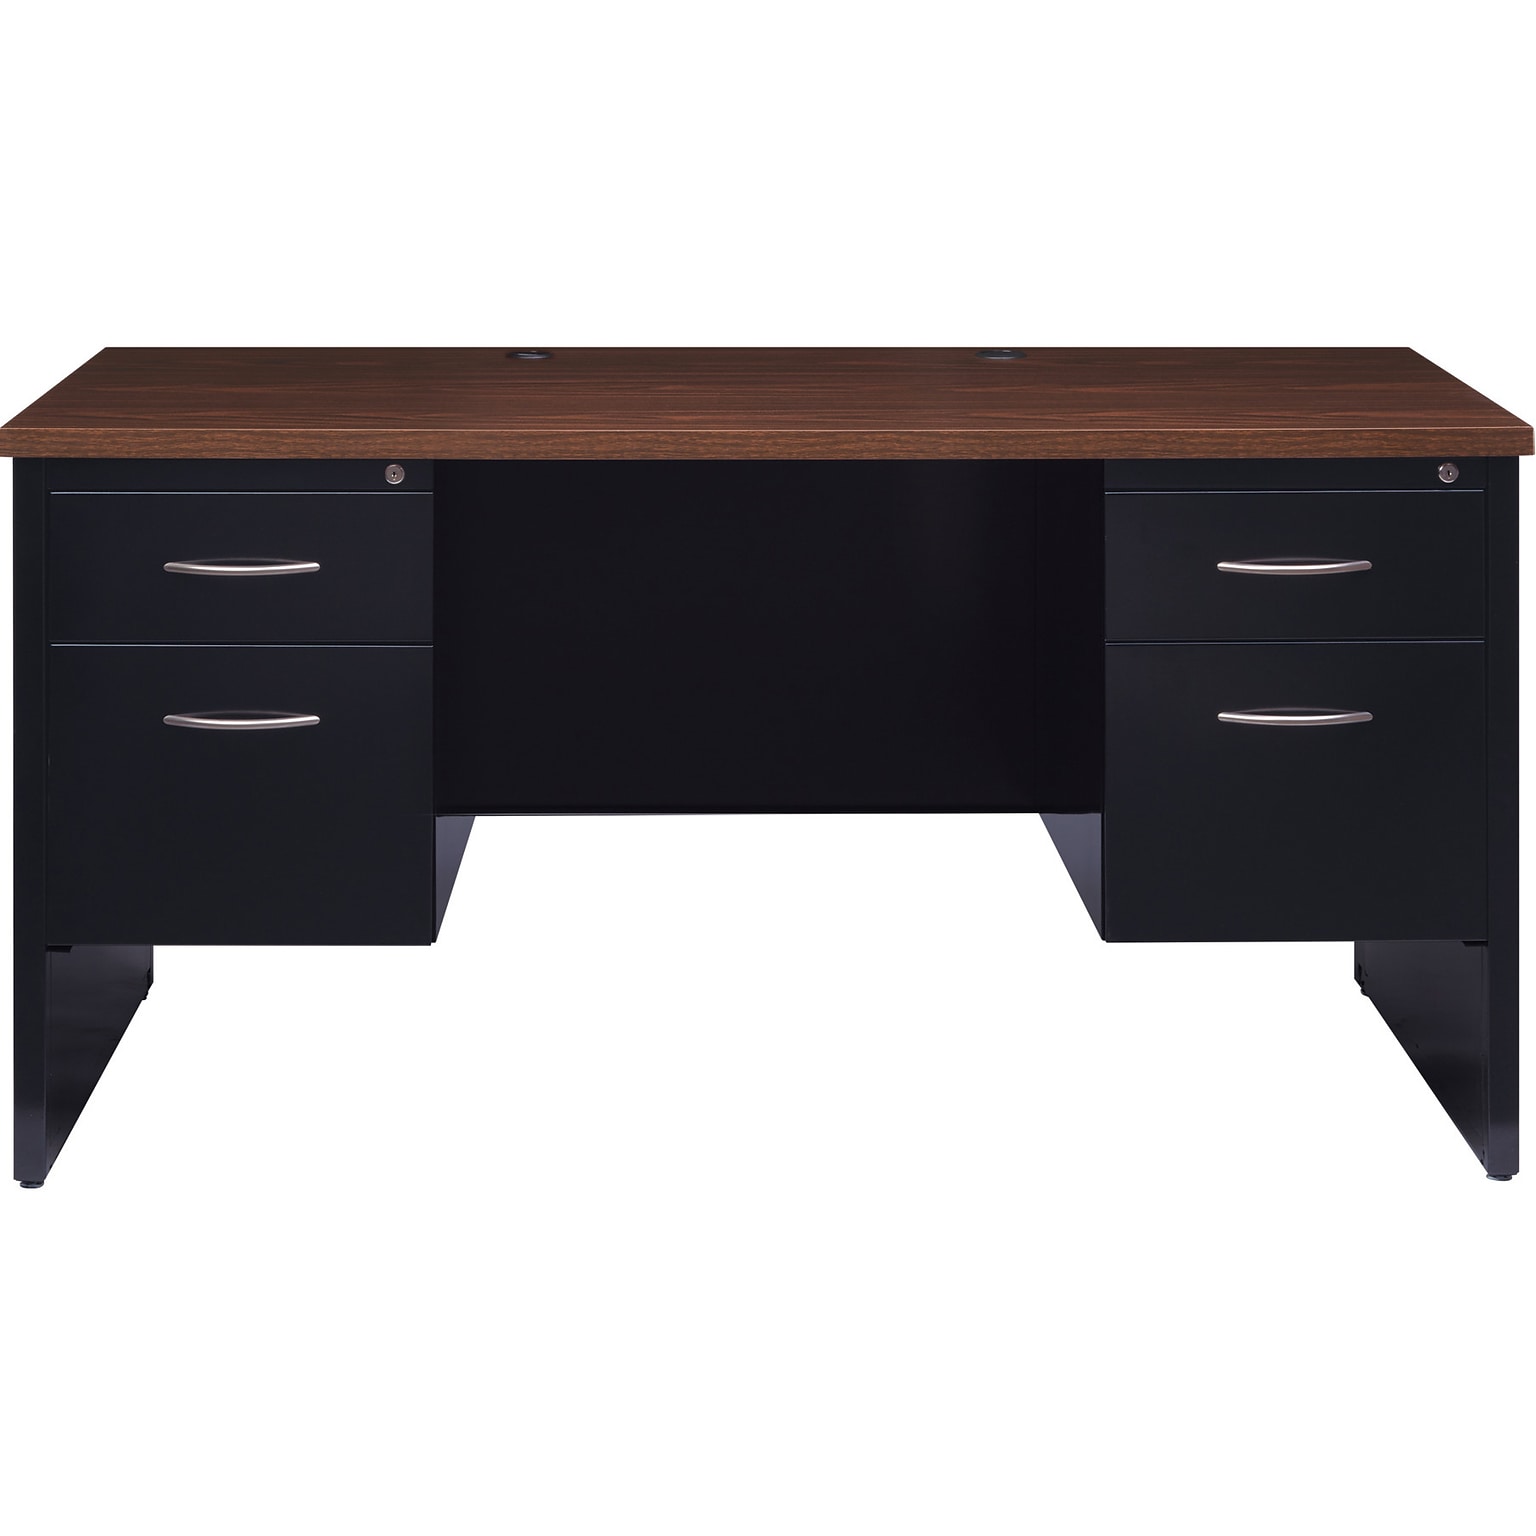 Hirsh 60W Double-Pedestal Desk, Black/Walnut (20533)